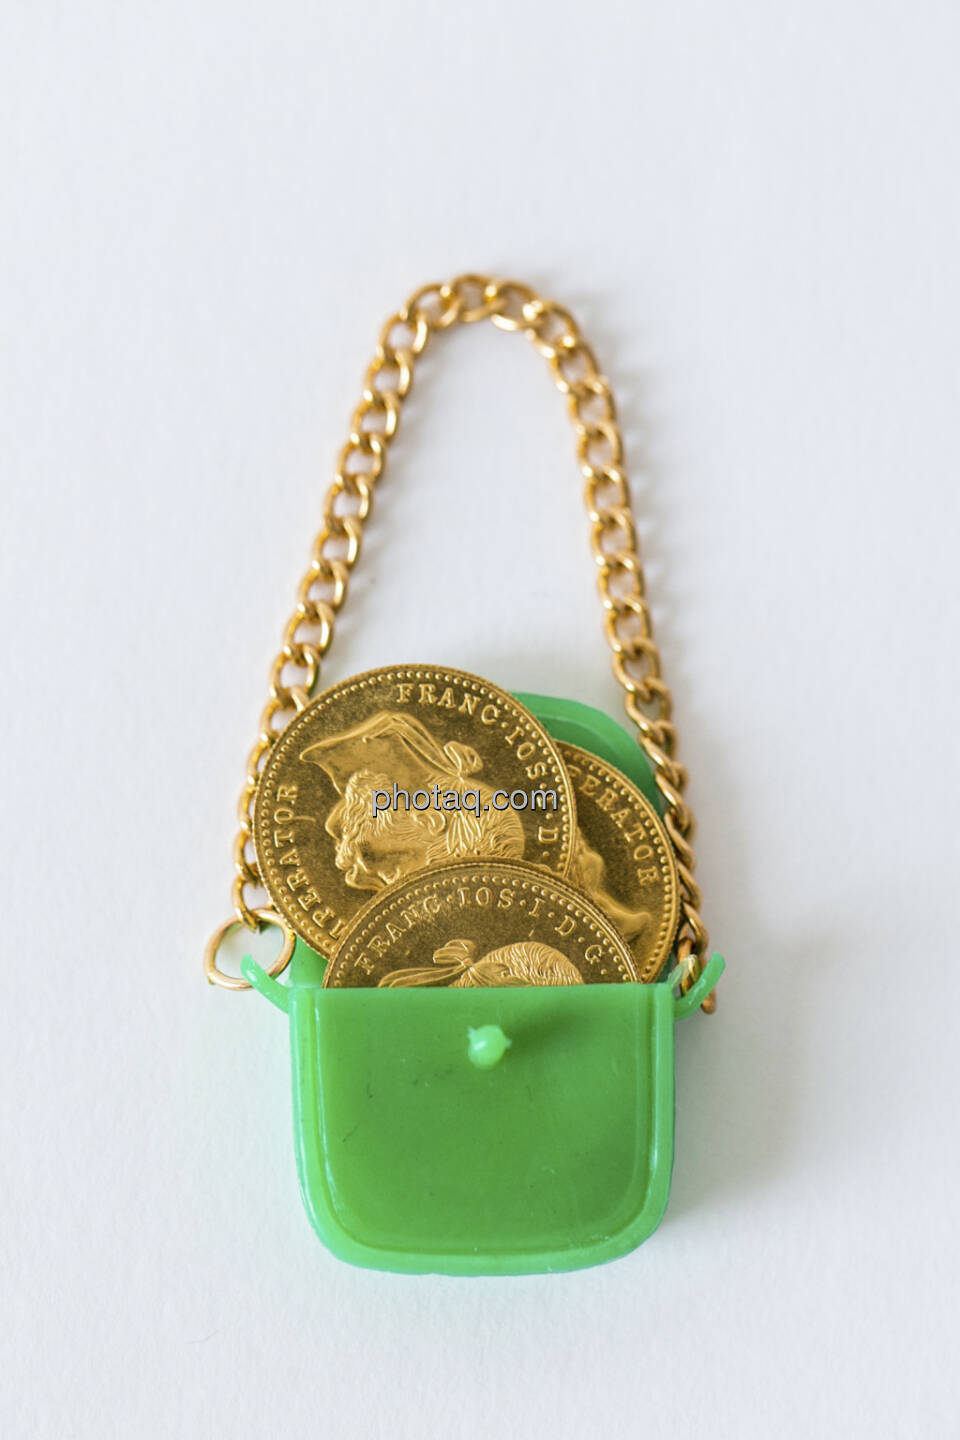 Die Taschen voll Gold, grüne Handtasche, Goldmünzen